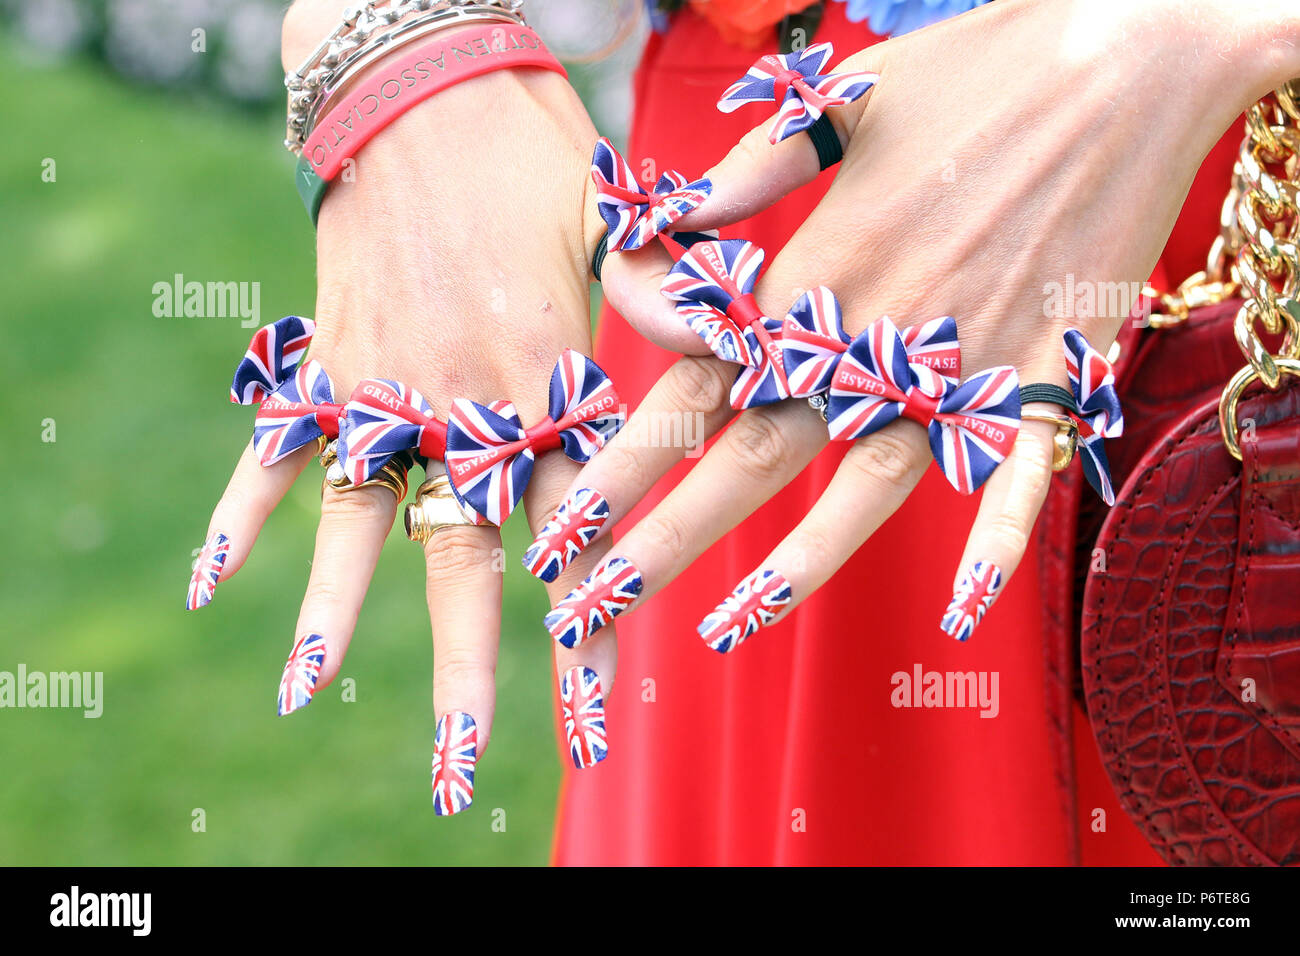 Le Royal Ascot, Fashion, des ongles d'une femme dans les couleurs nationales de Grande-Bretagne Banque D'Images